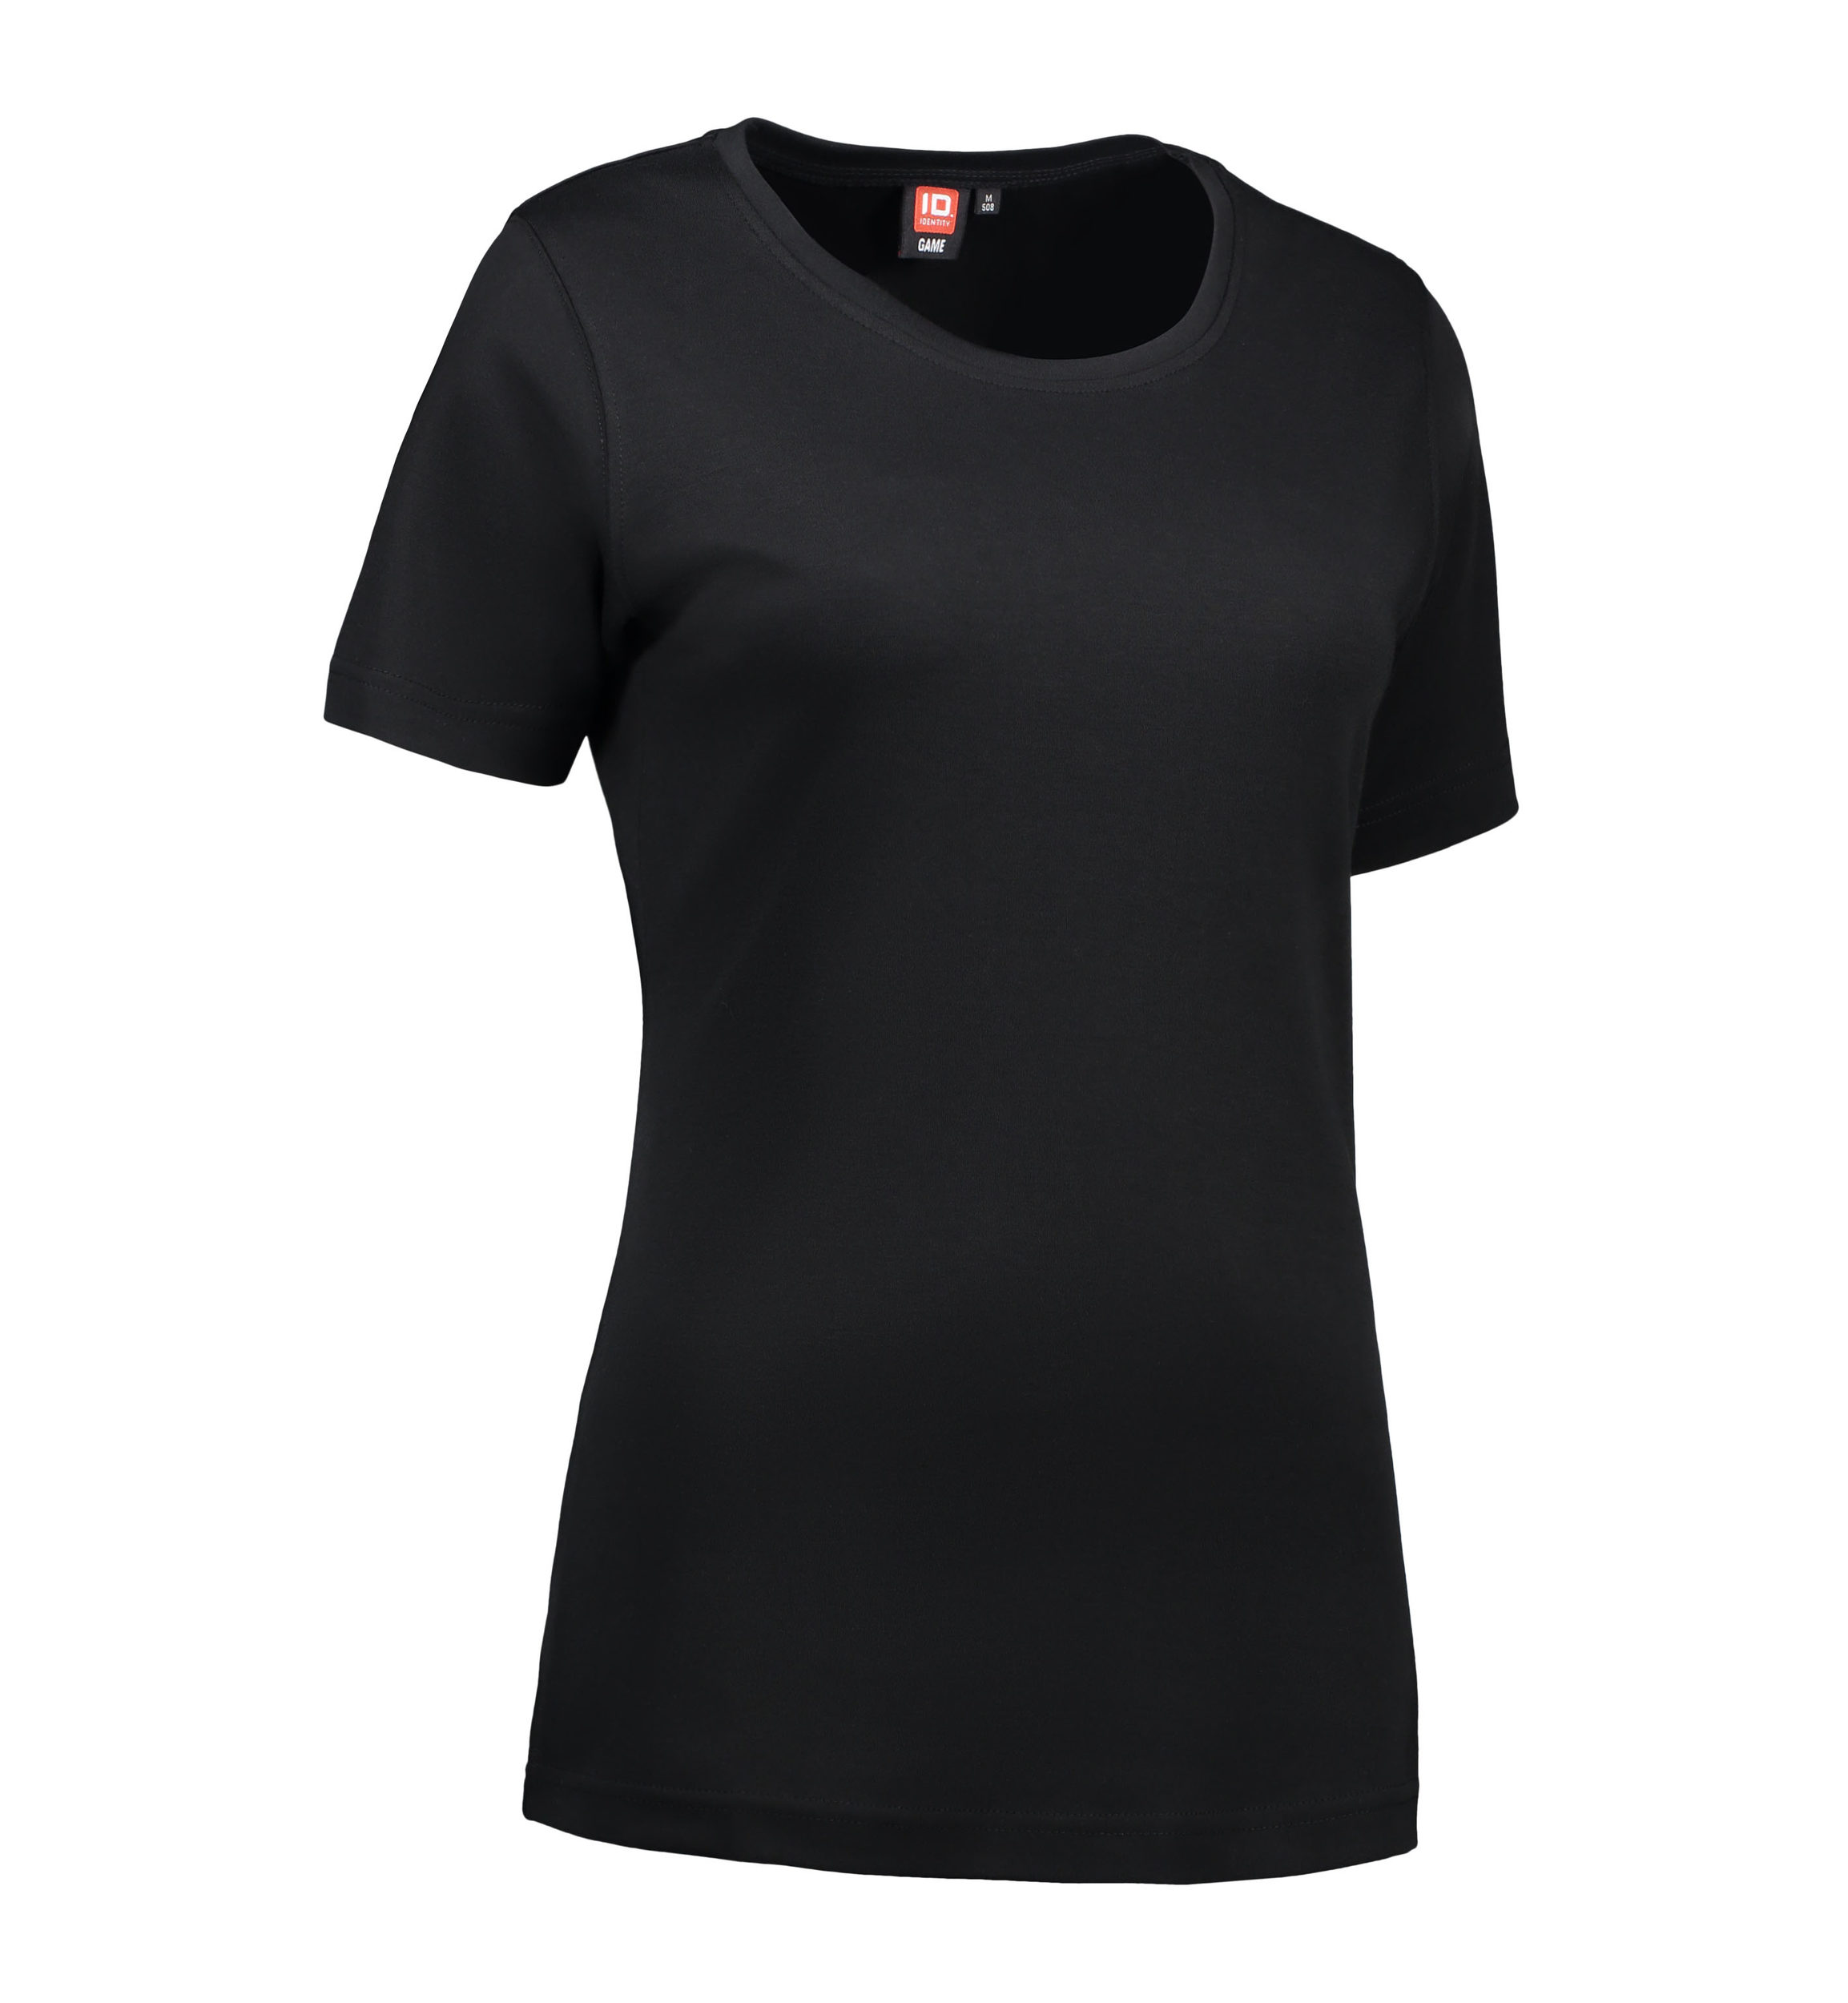 Billede af Sort t-shirt med rund hals til damer - XL hos Sygeplejebutikken.dk